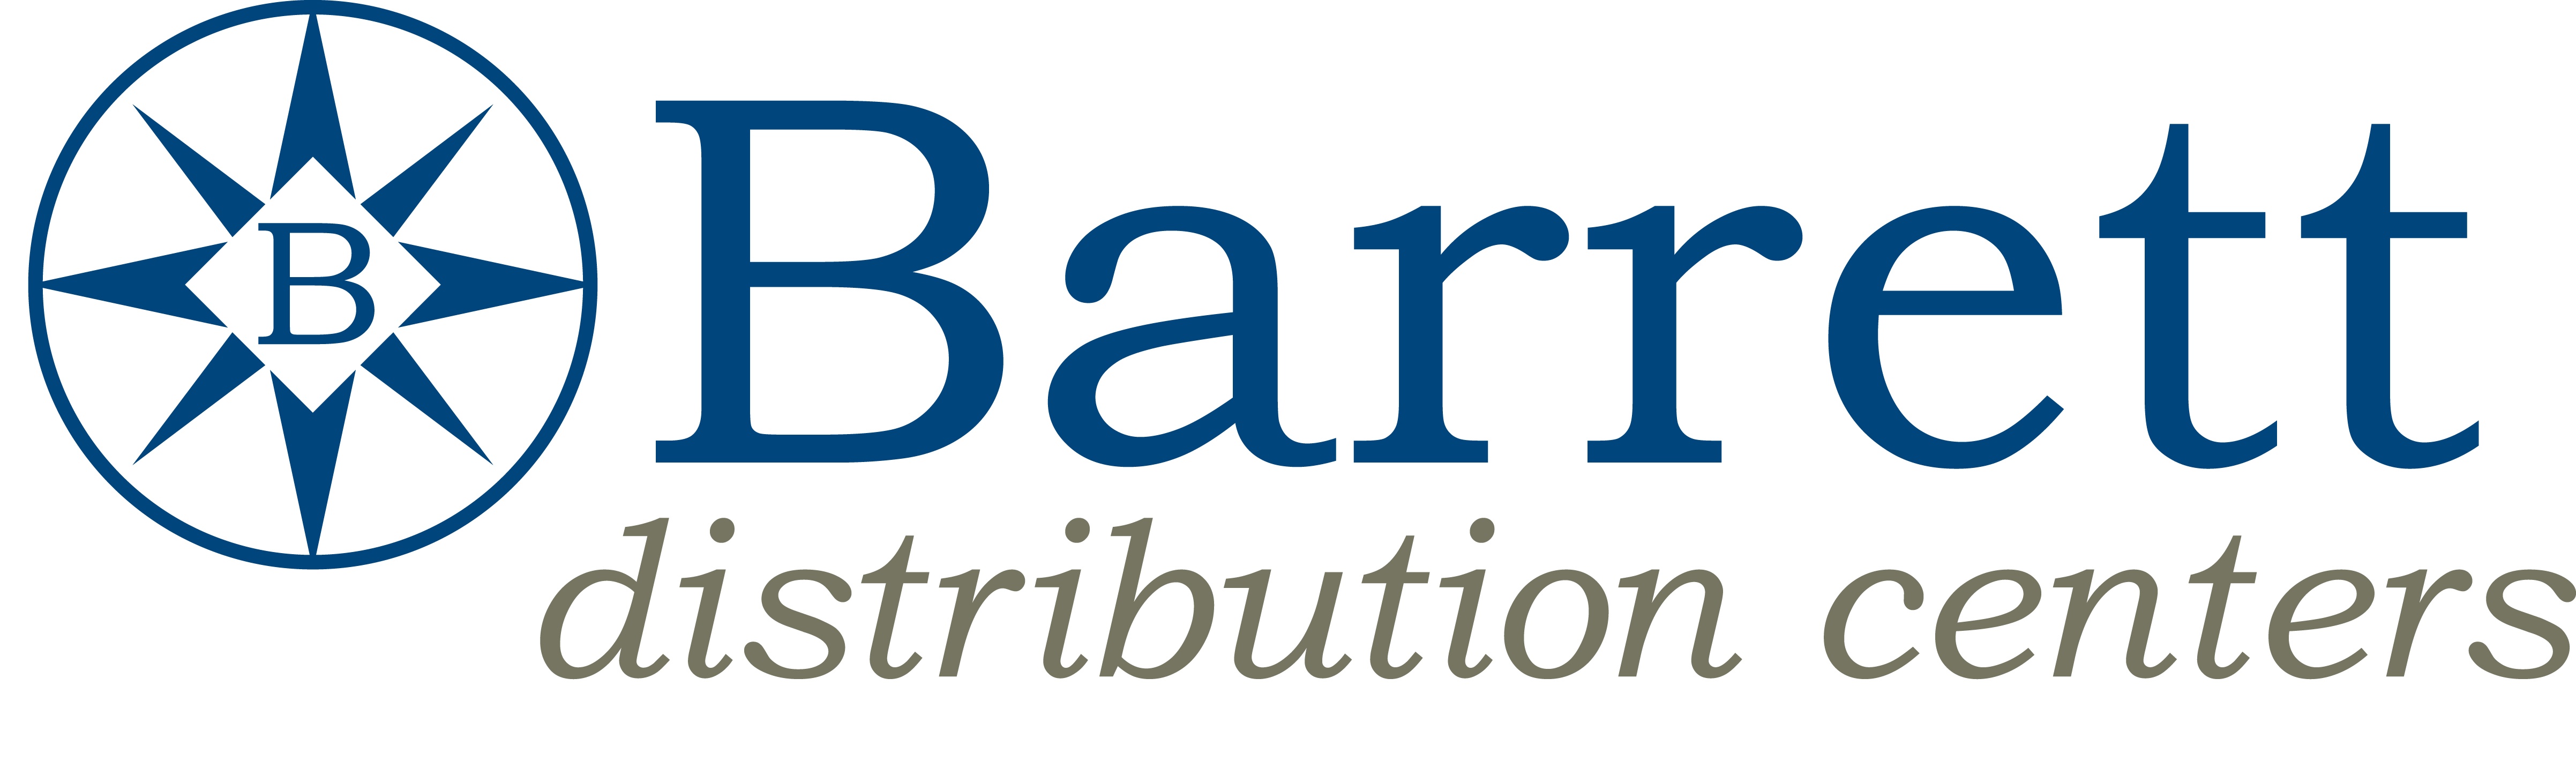 Blog | Barrett Distribution